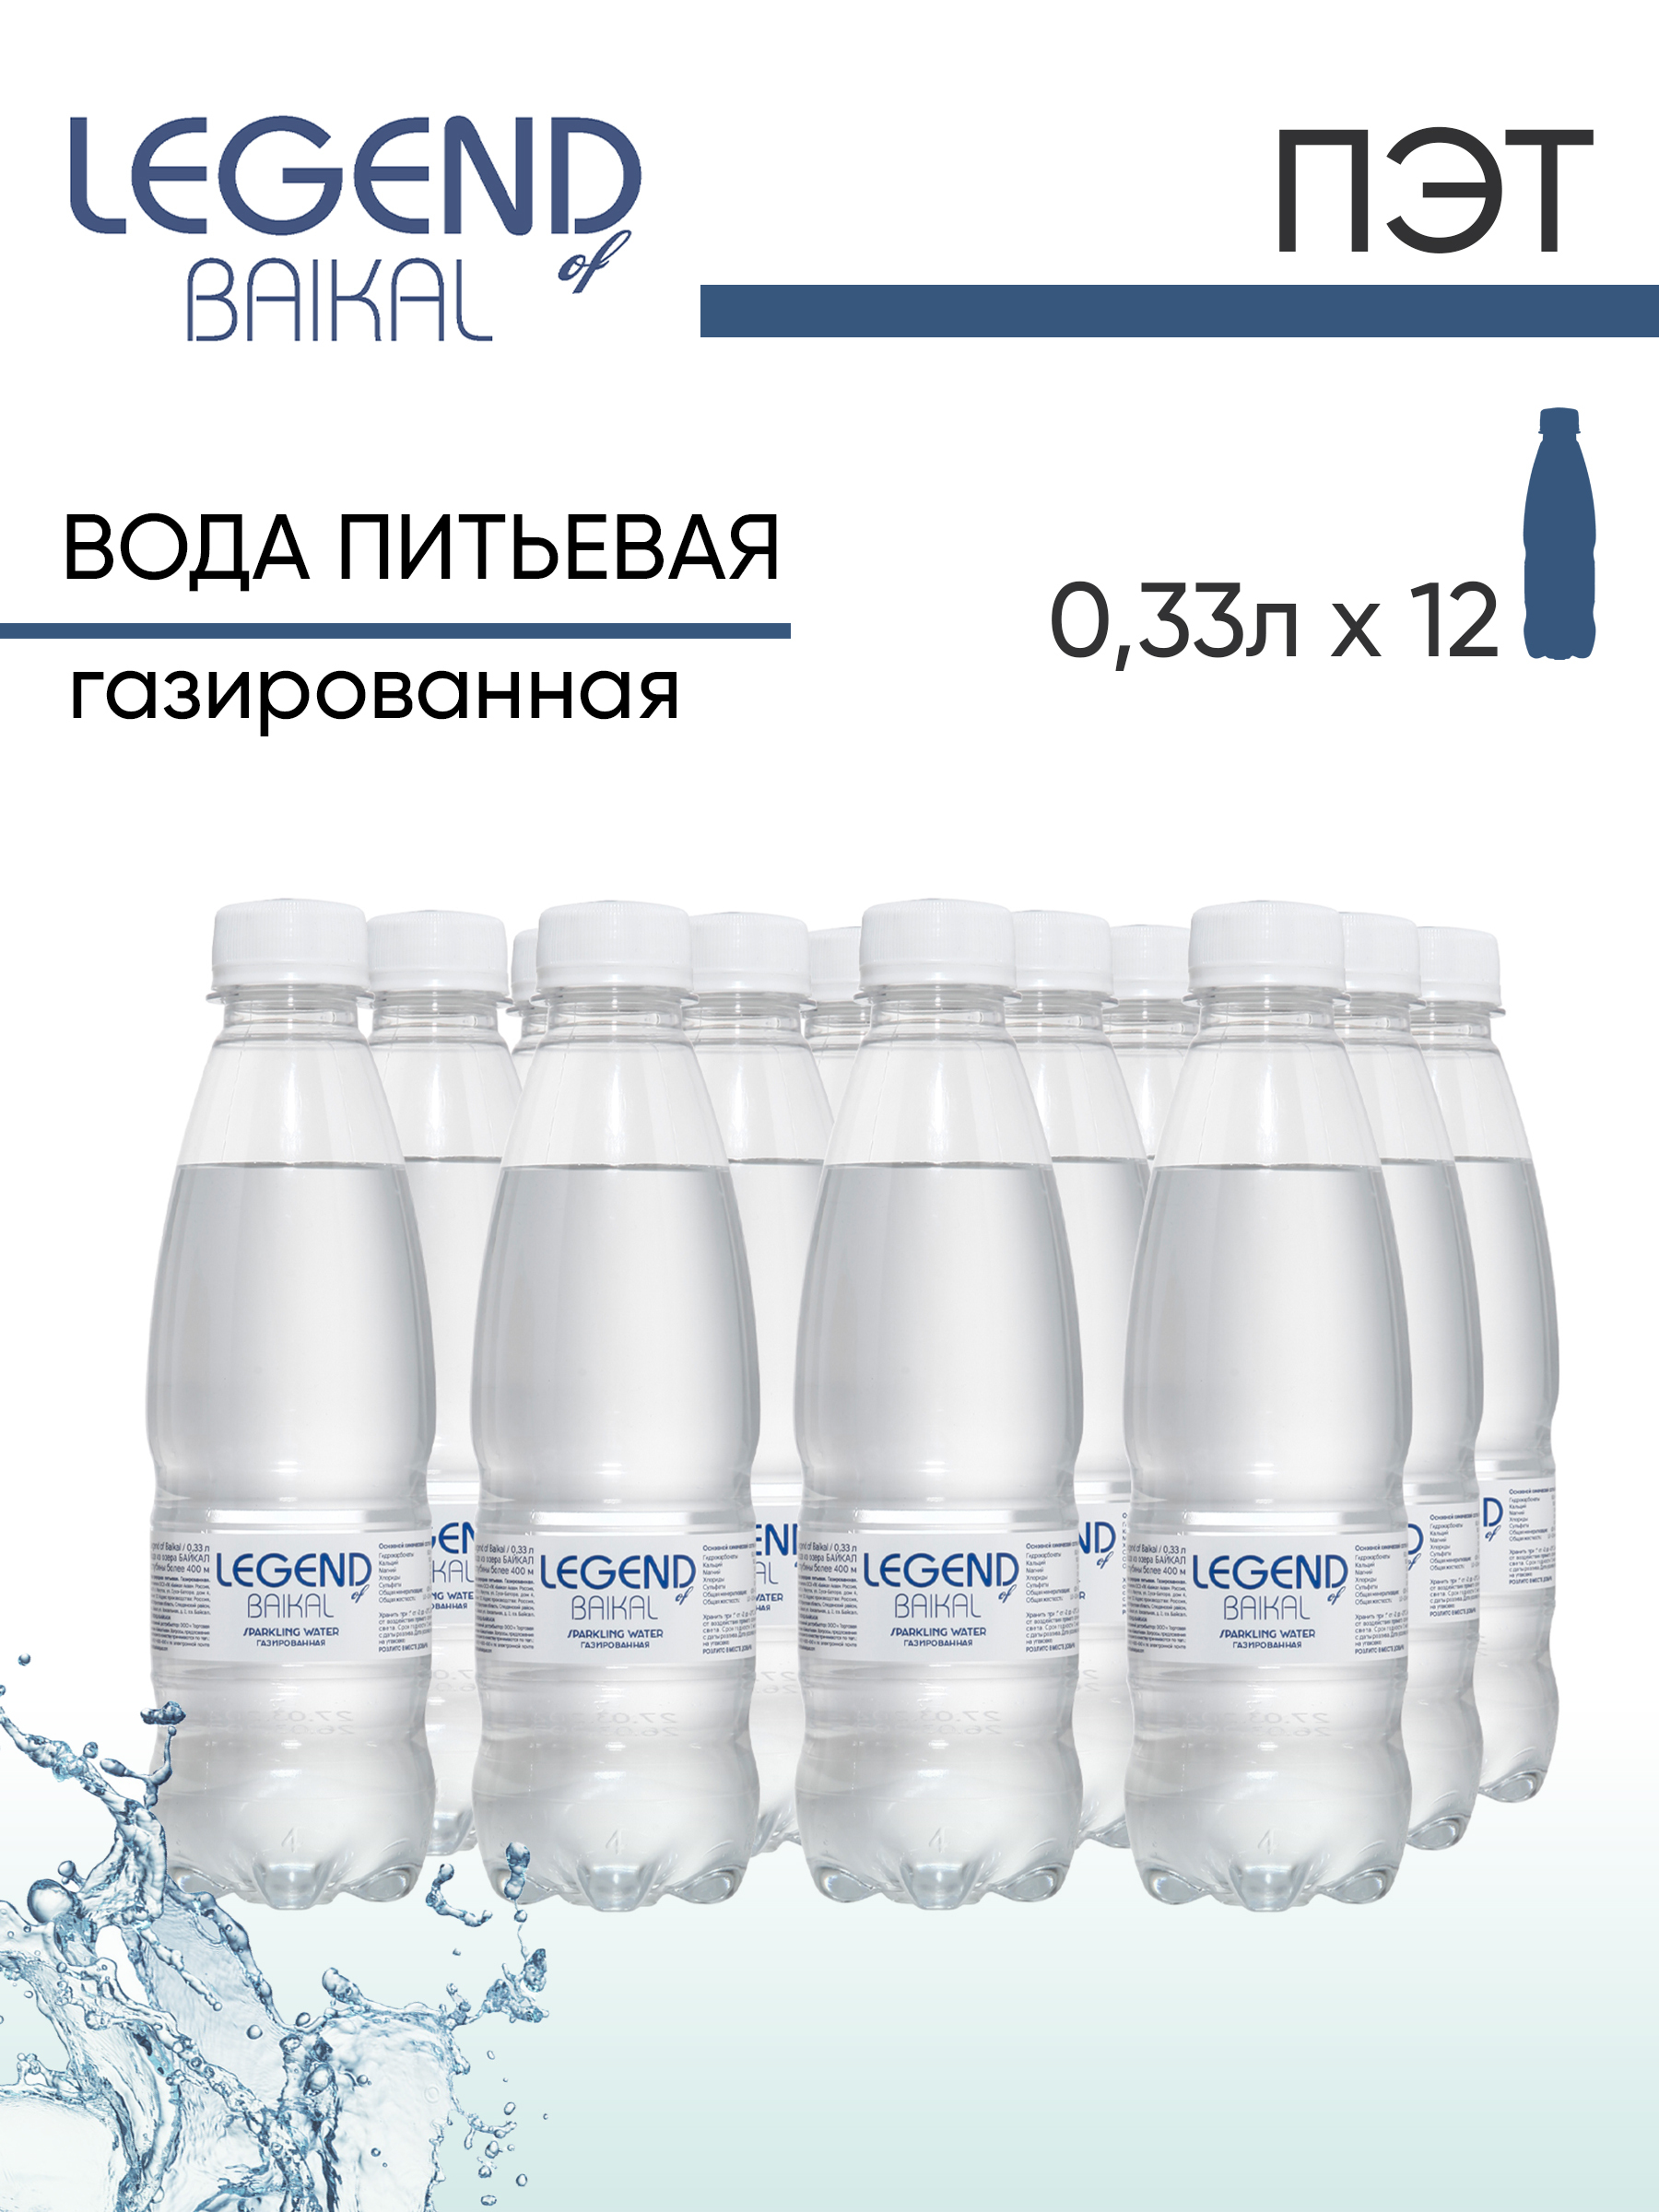 Легенда Байкала газированная 0,33. Минеральная вода Legend of Baikal ГАЗ 0,33 В магазине. Легенда Байкала вода.